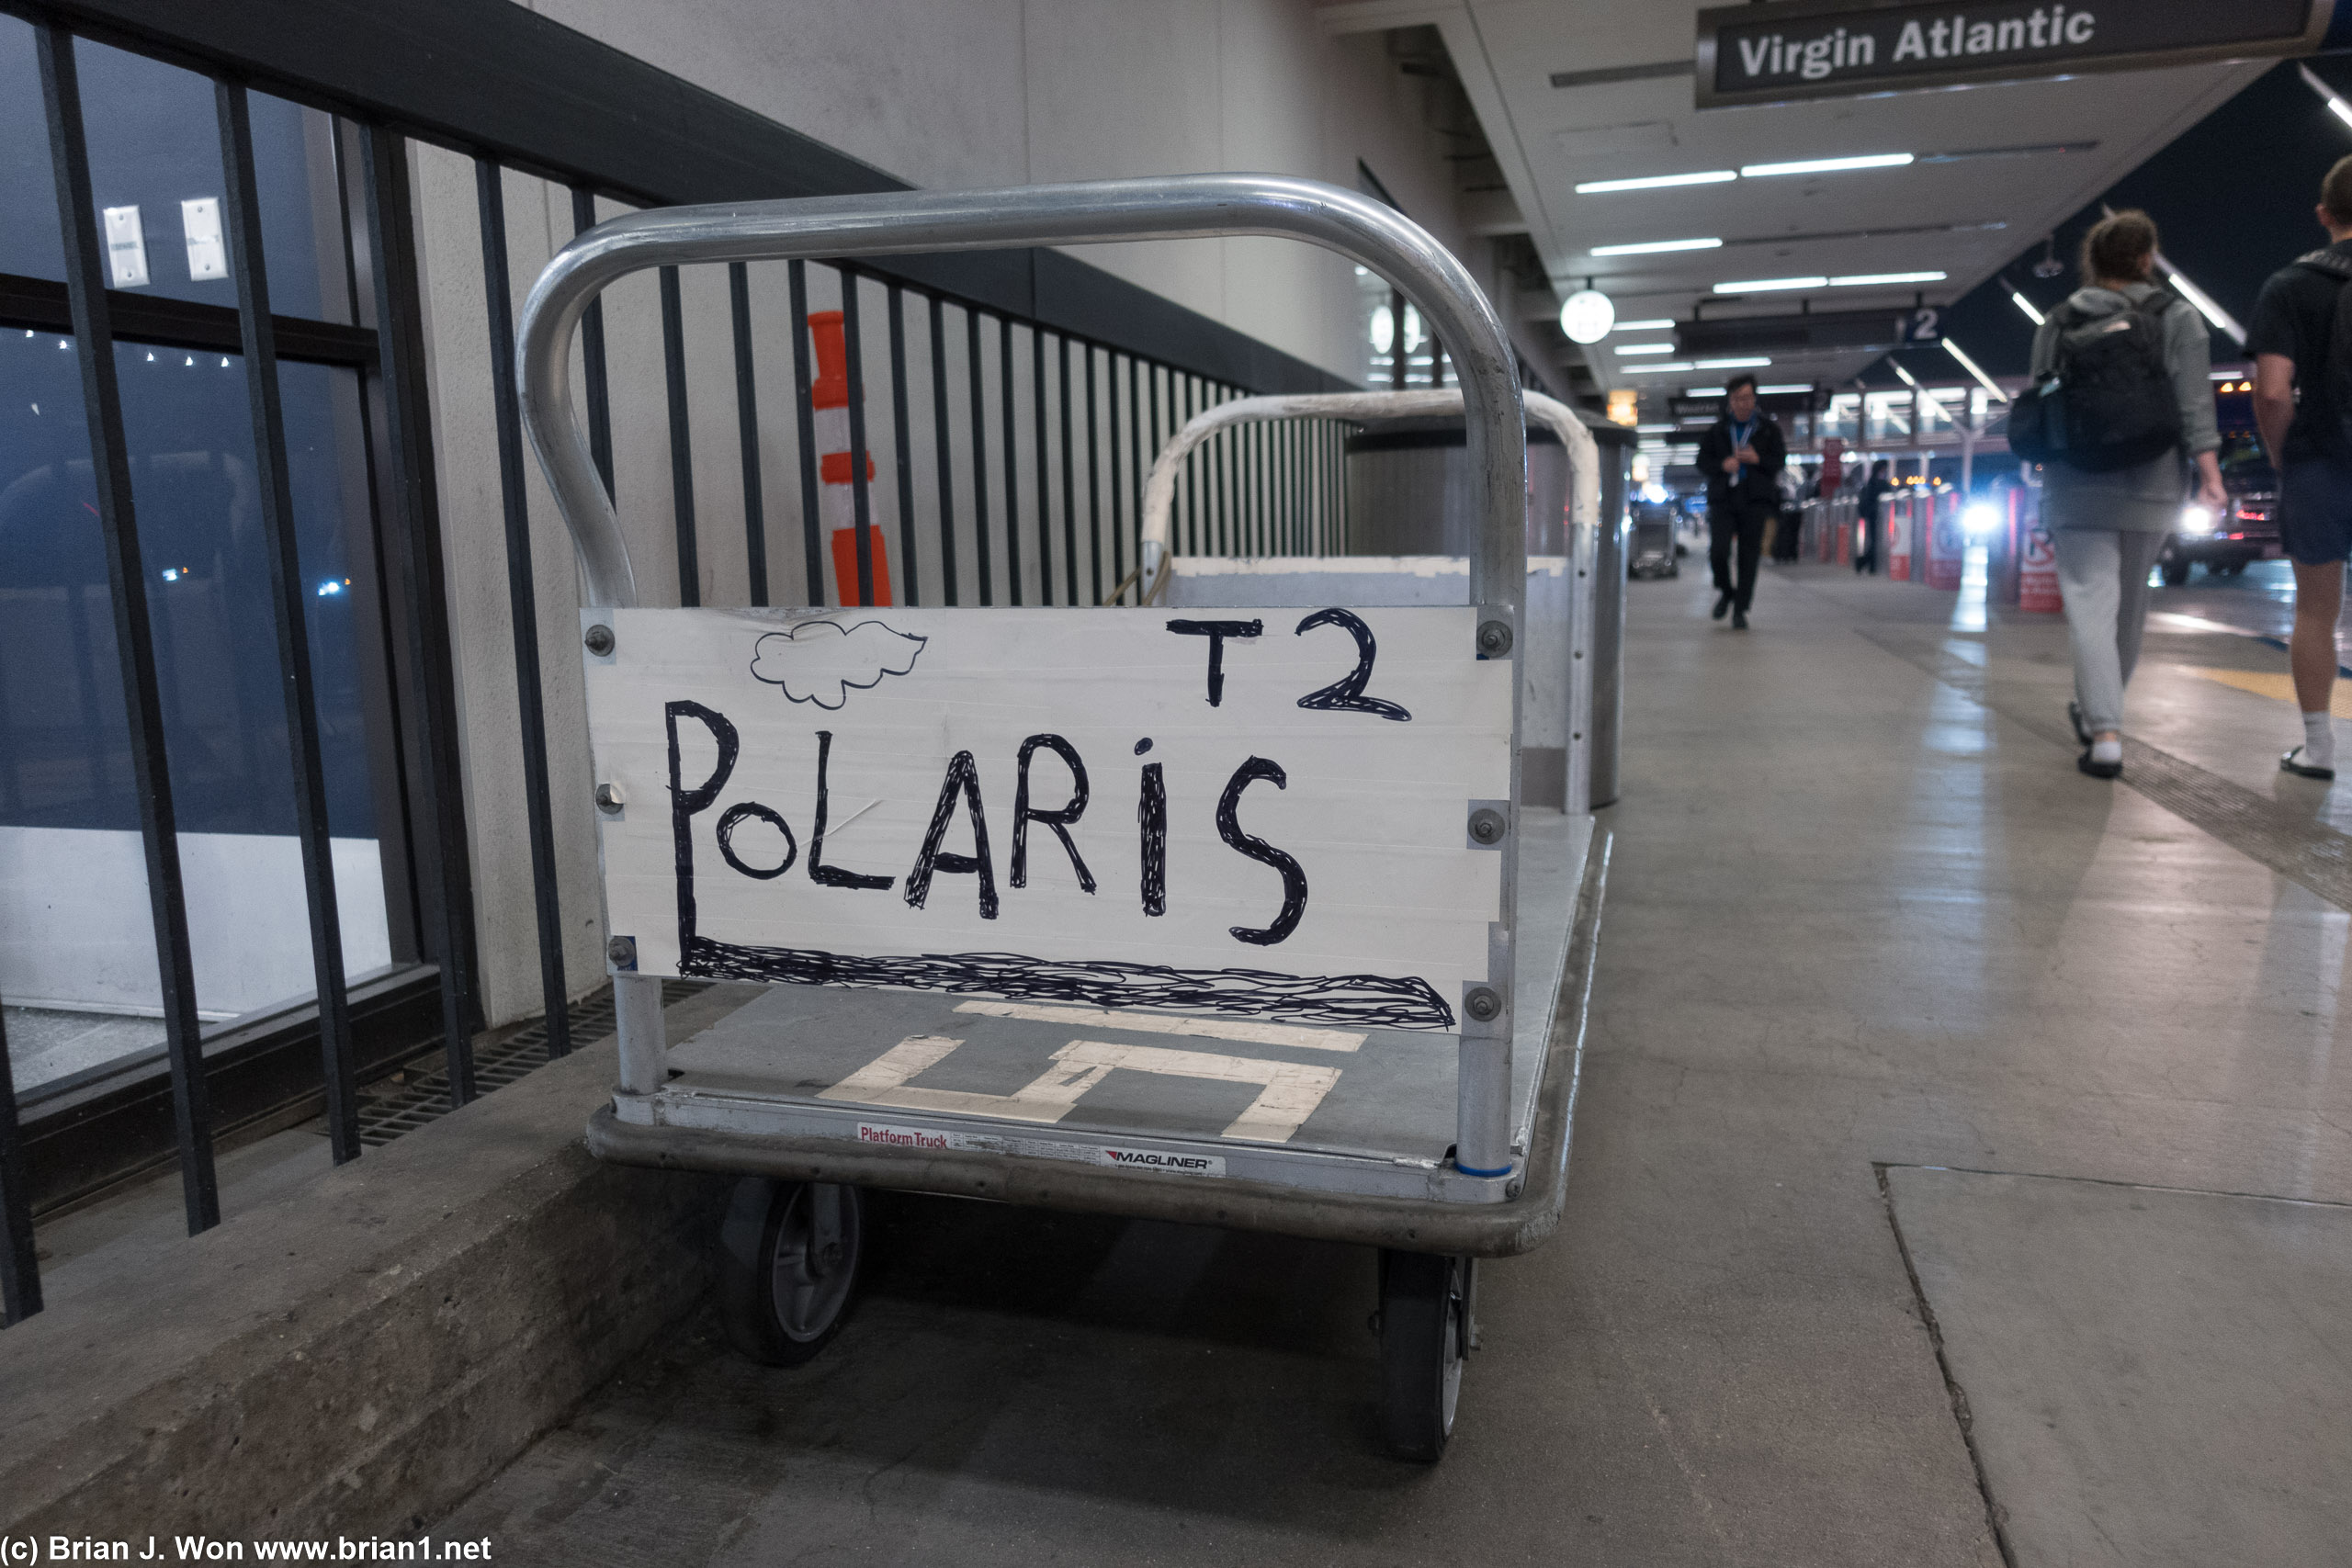 Found the "Polaris" cart.